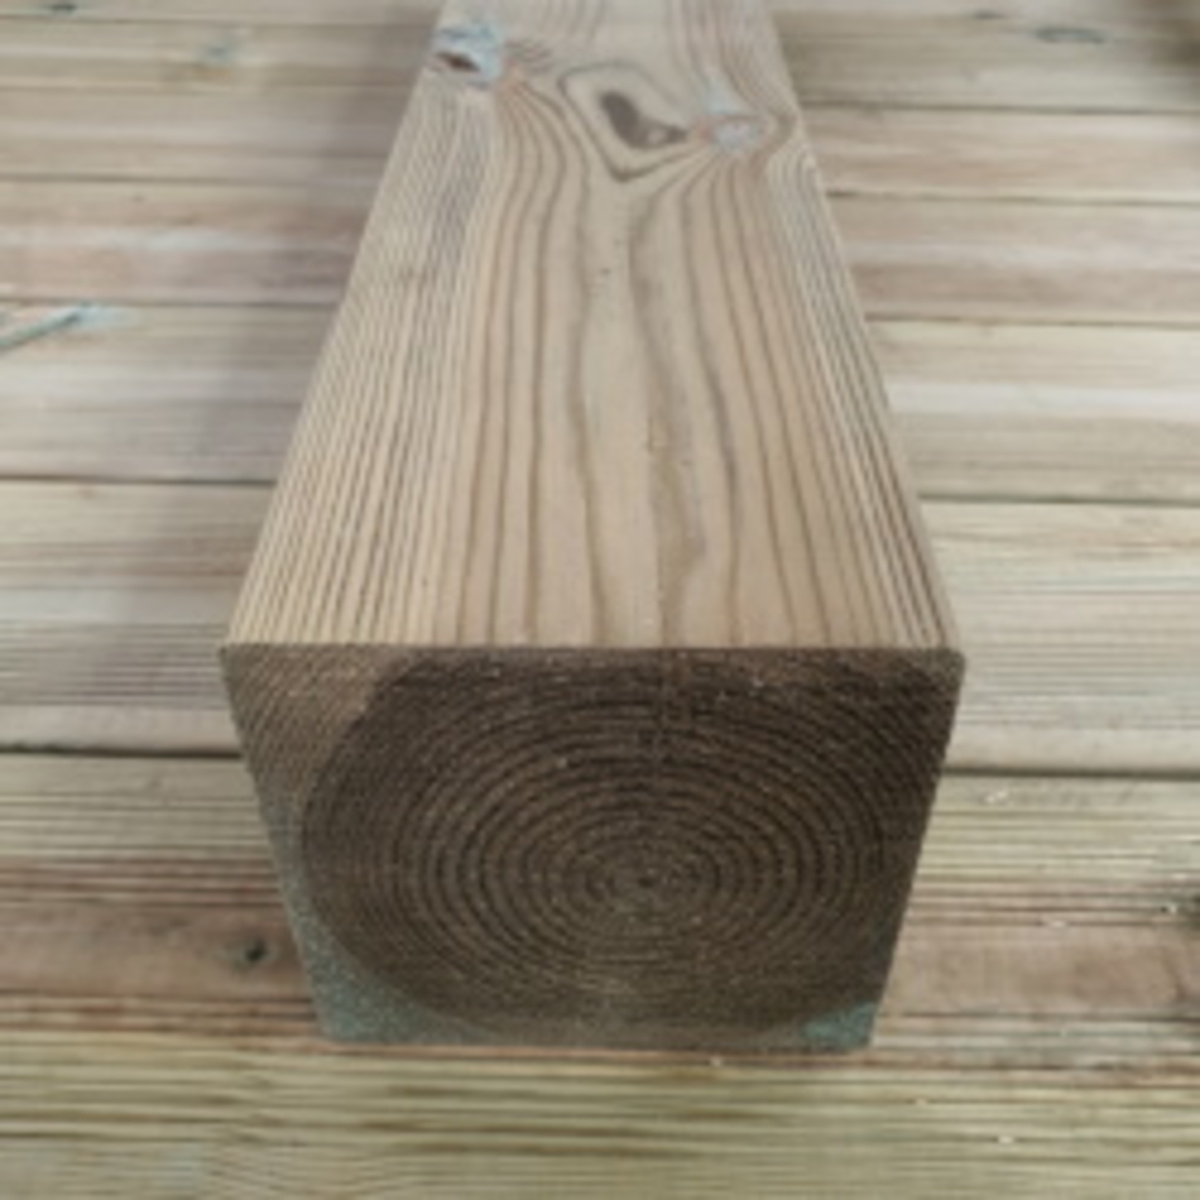 Druckimprägniertes Schnittholz 14x14cm, maximale verfügbare Länge 480cm